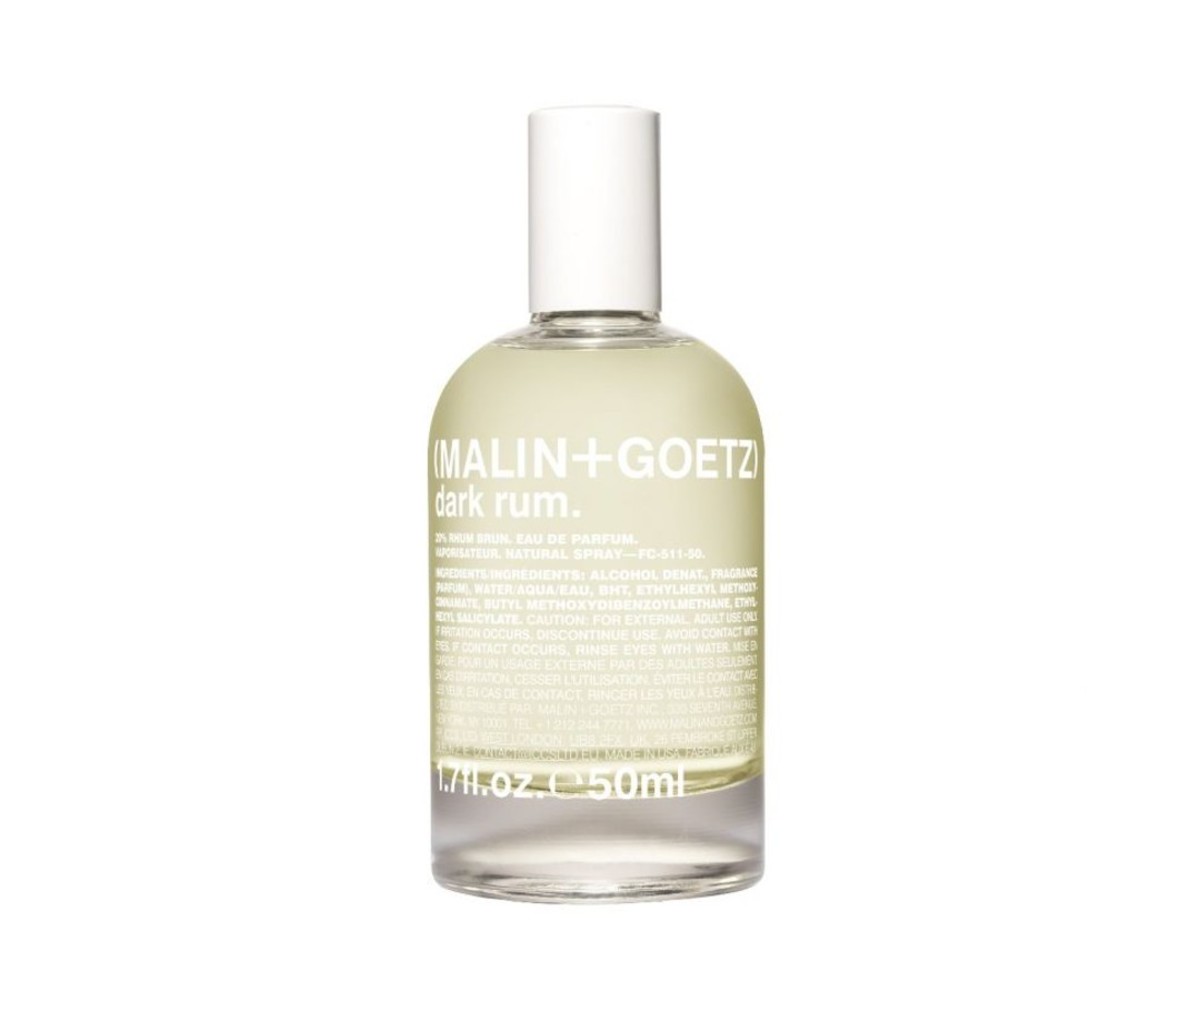 Malin+Goetz Dark Rum